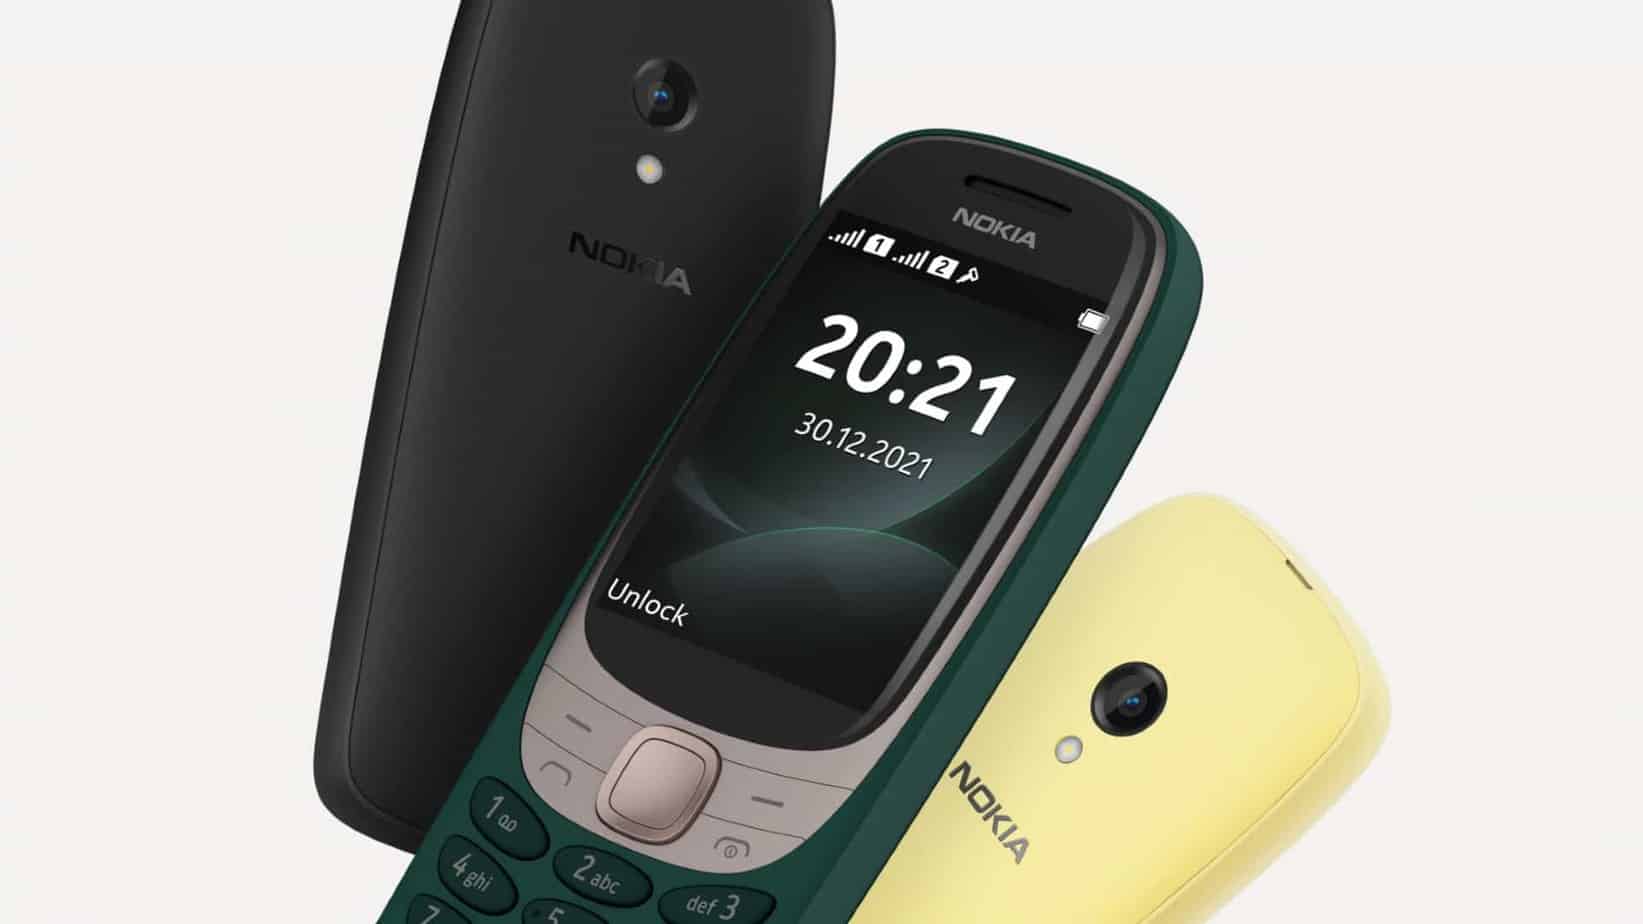 Le Nokia 6310 2021 sera disponible en trois coloris, vert, jaune et noir.